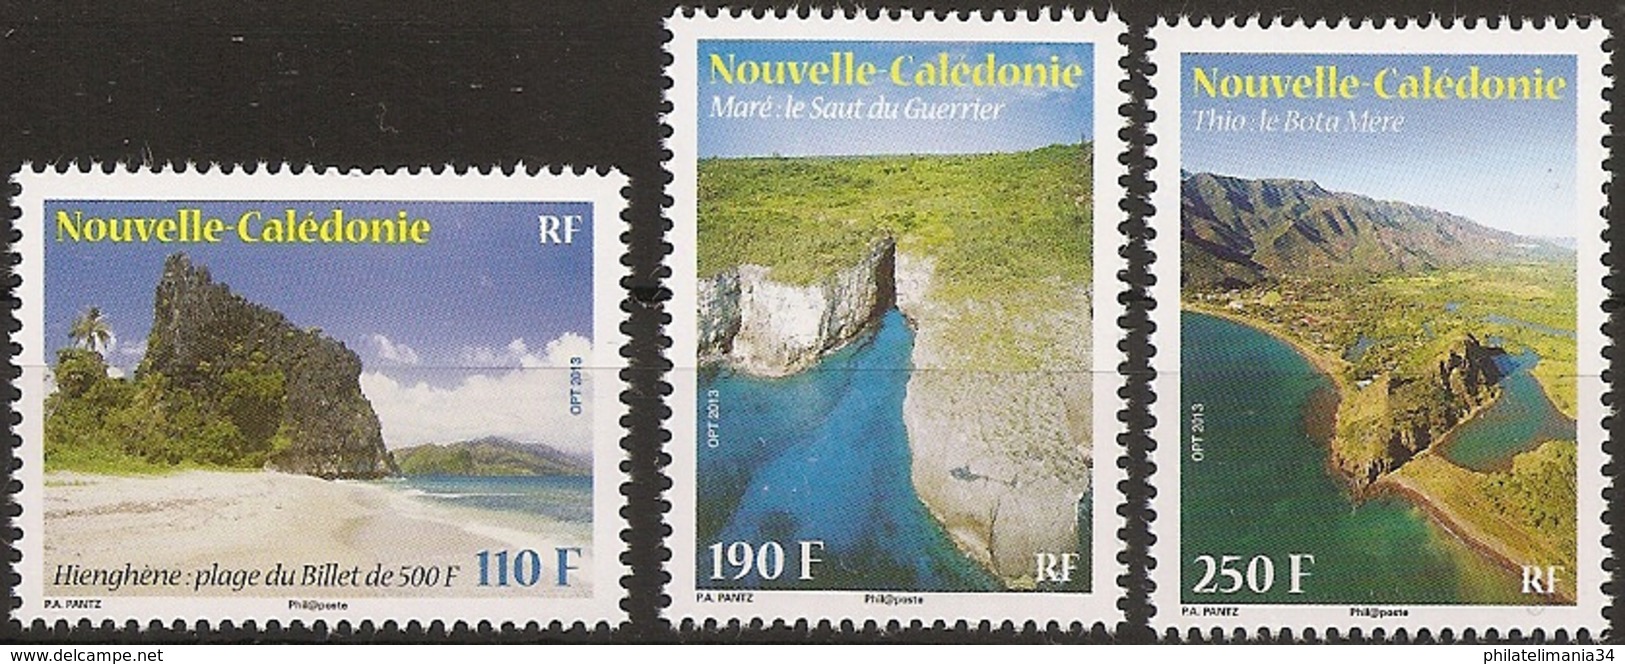 Nouvelle-Calédonie 2013 - Série Paysages (3v) - Unused Stamps